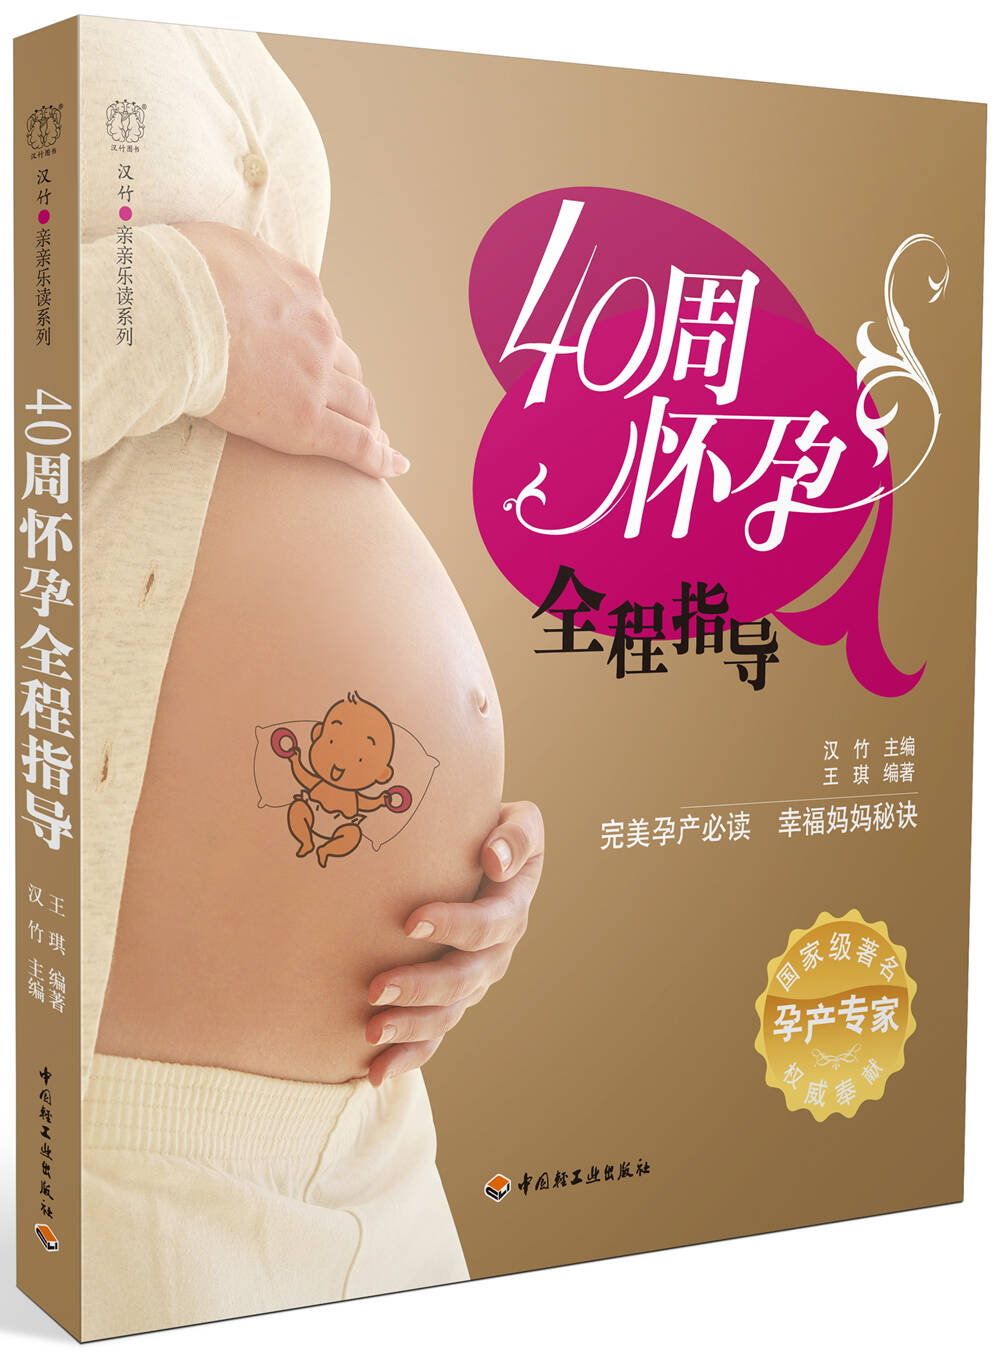 9本适合孕妈妈读的书籍推荐